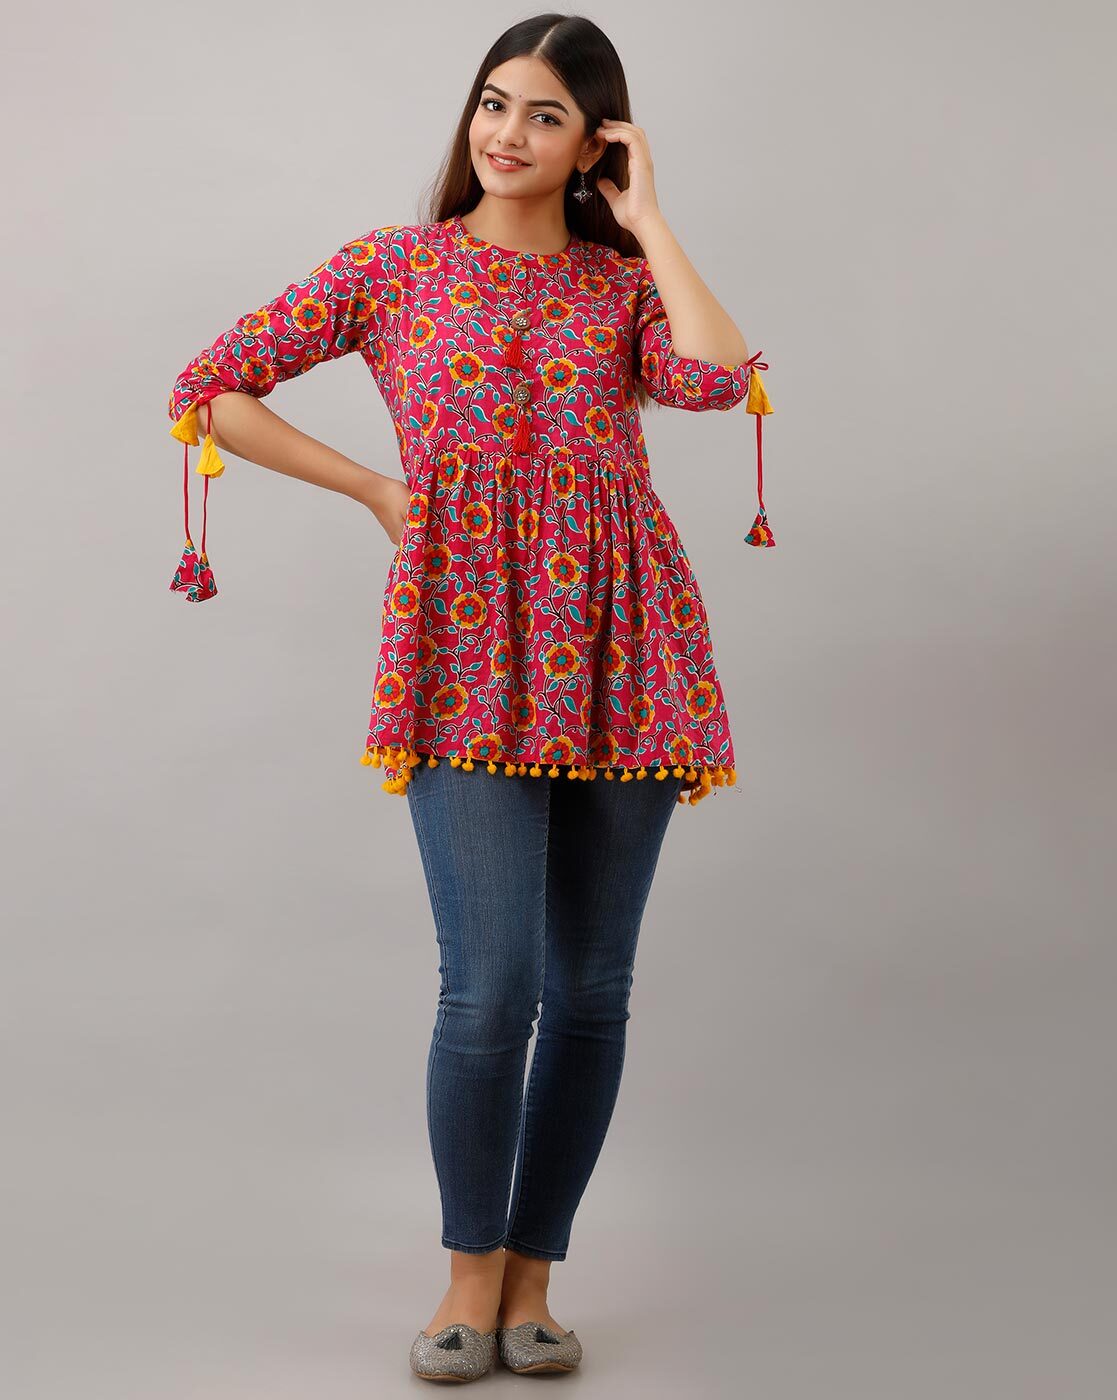 PMUYBHF Womens Sunflower Printing Tunic Tops Long India